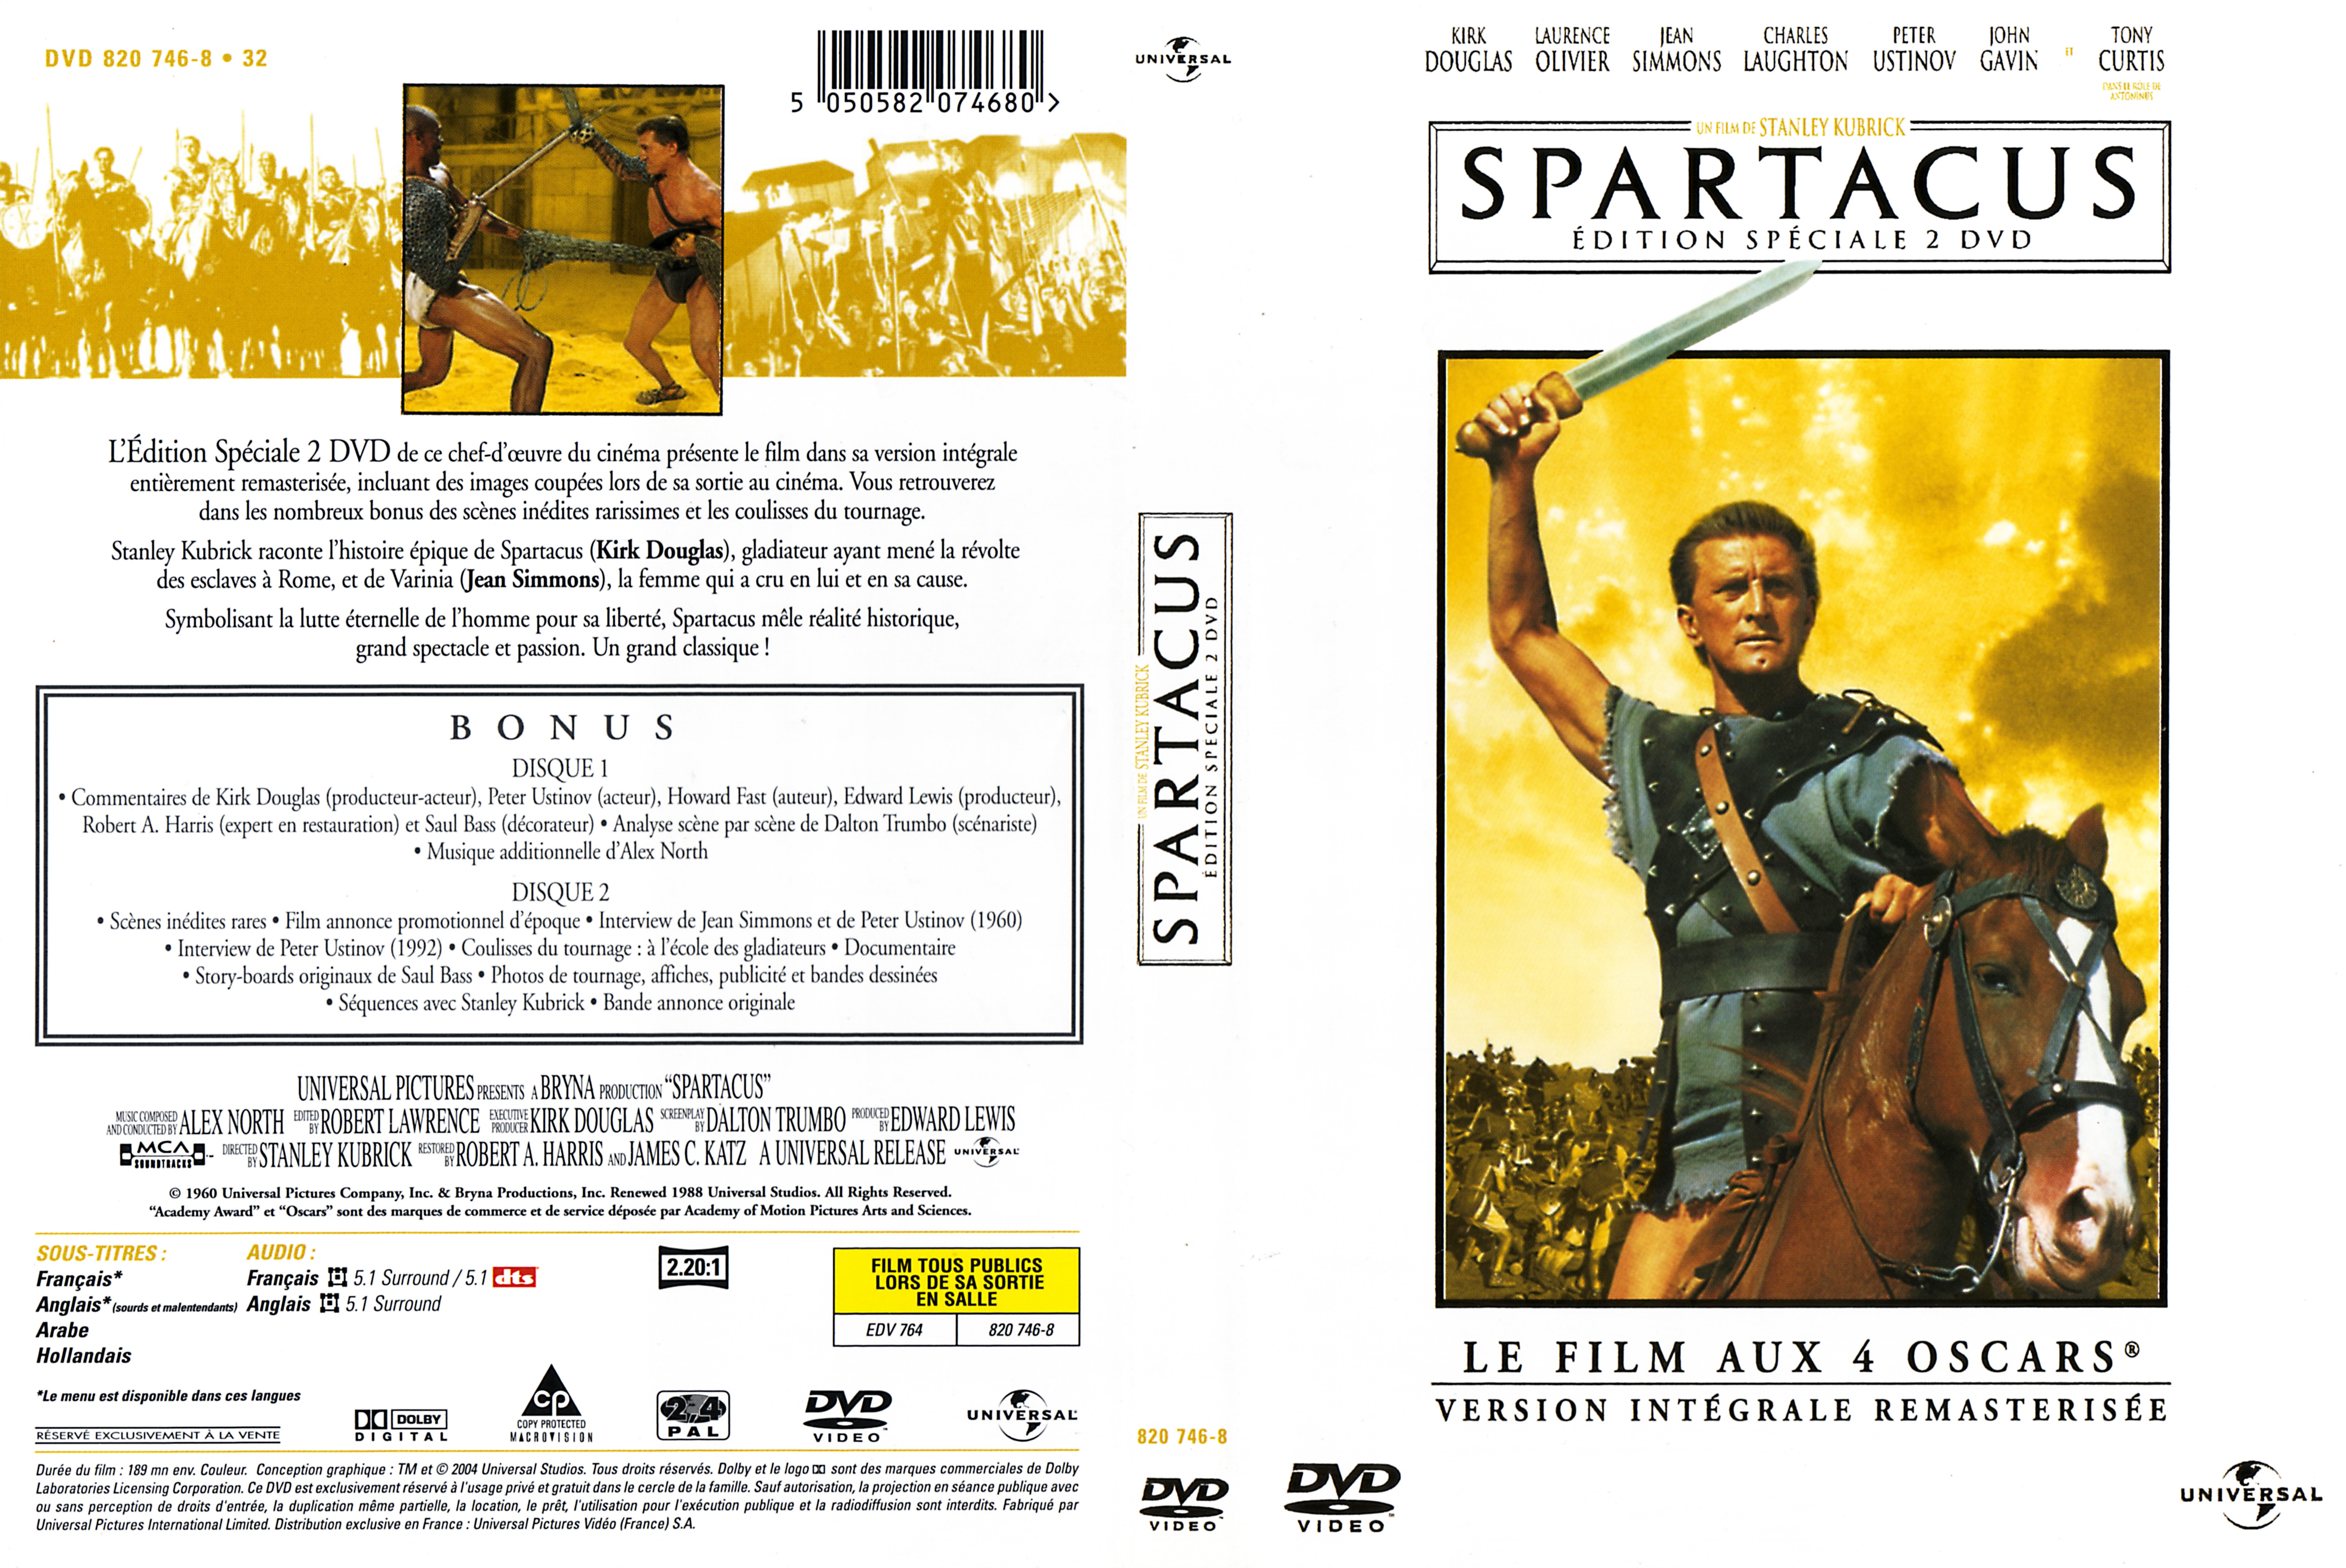 Jaquette DVD Spartacus v2